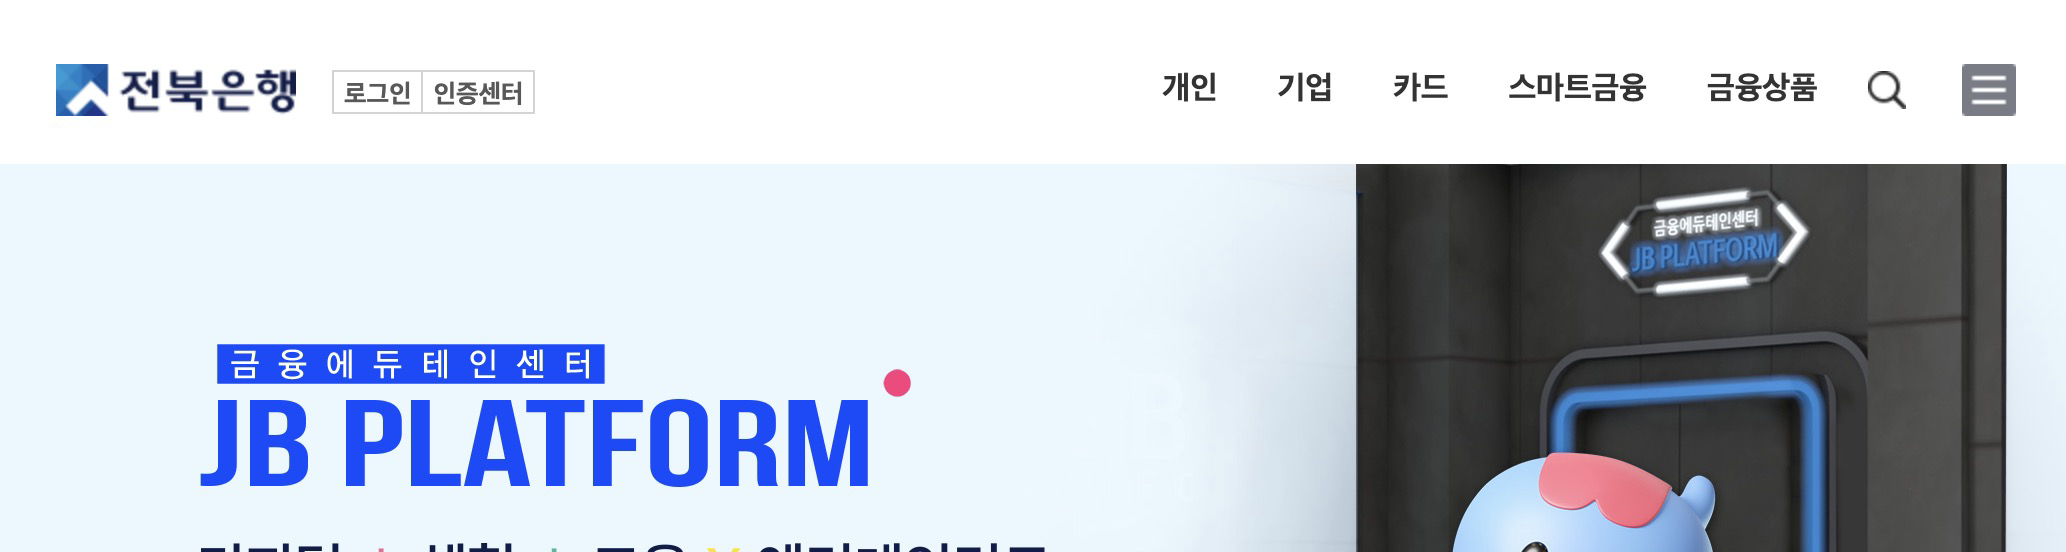 전북은행 홈페이지